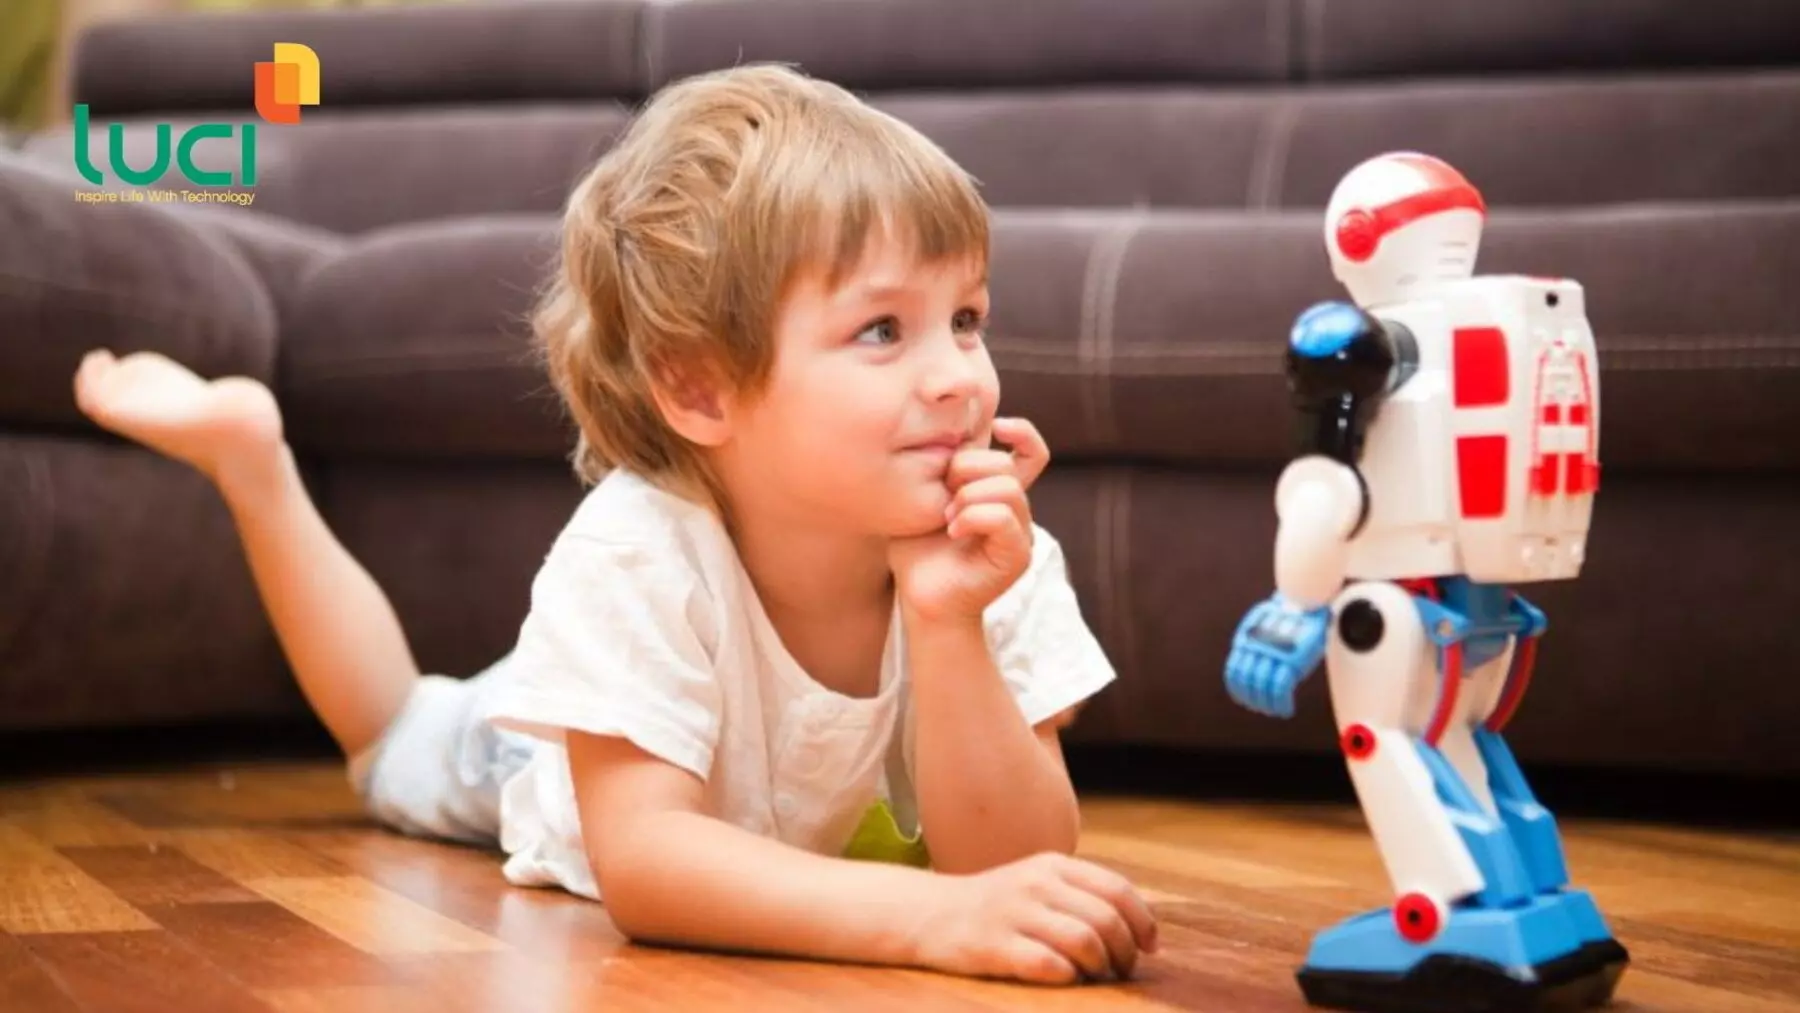 Phụ huynh cần lựa chọn đồ chơi thông minh phù hợp với độ tuổi và sở thích của trẻ